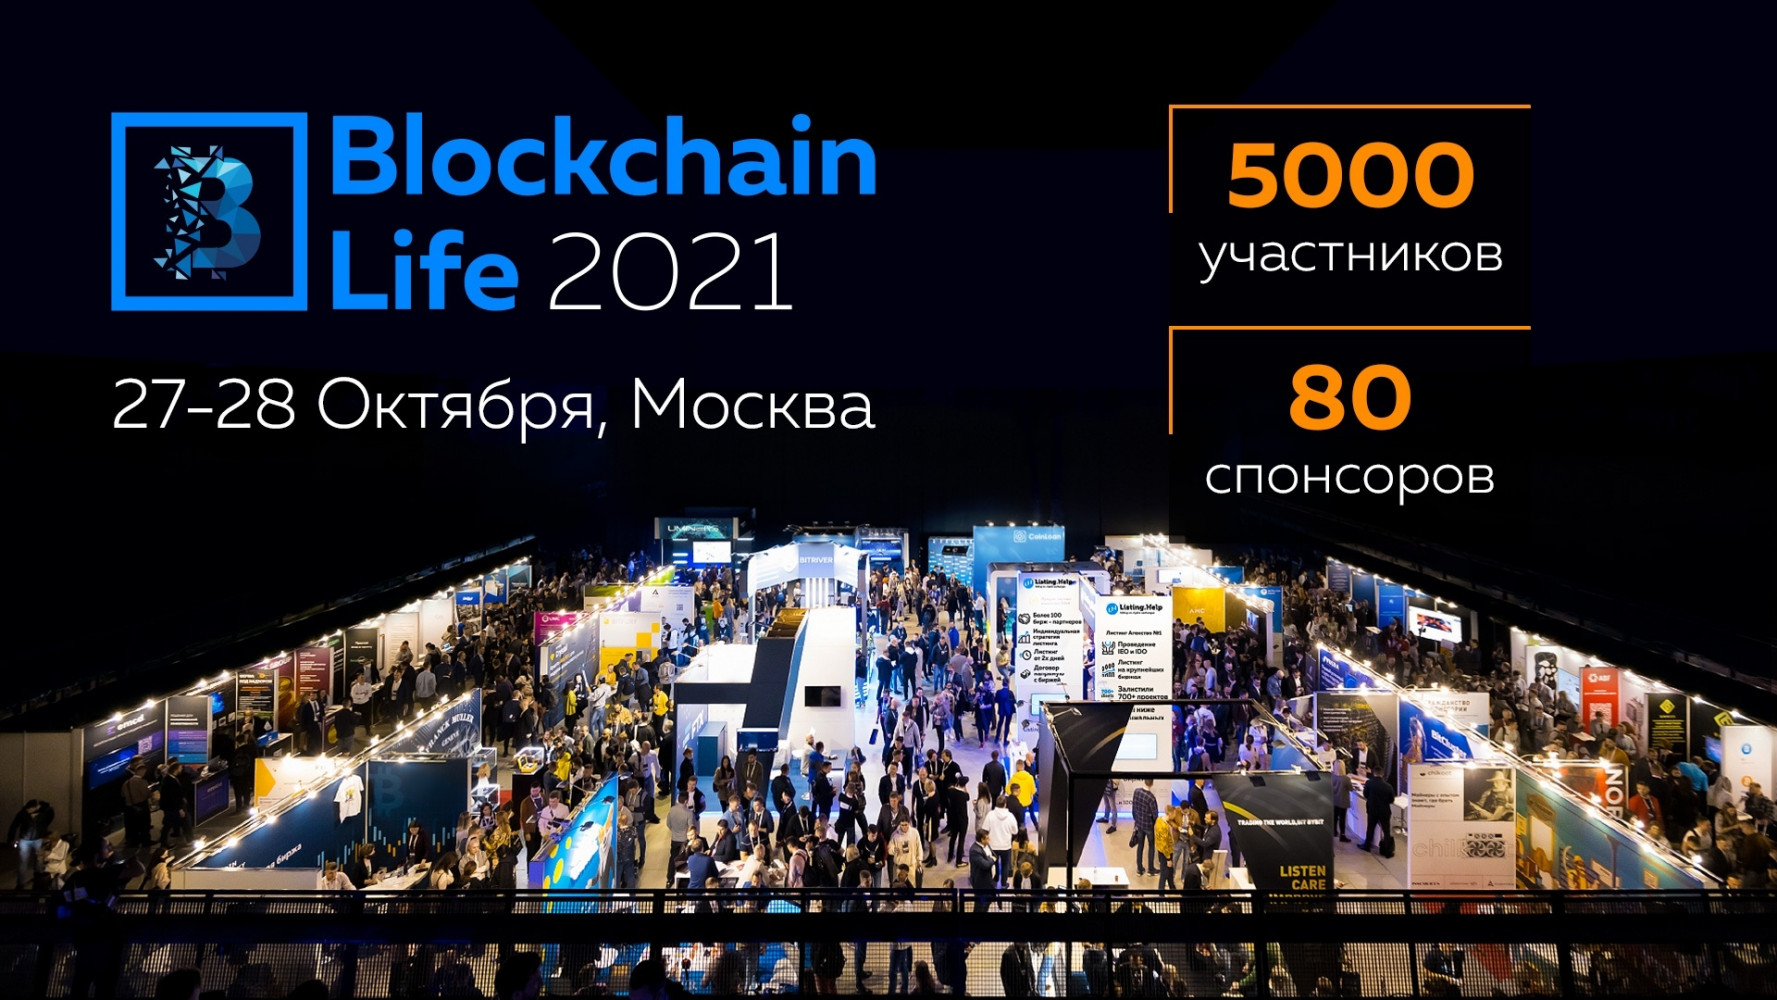 27 - 28 октября в Москве состоится 7-ой Международный форум по блокчейну, криптовалютам и майнингу — Blockchain Life 2021